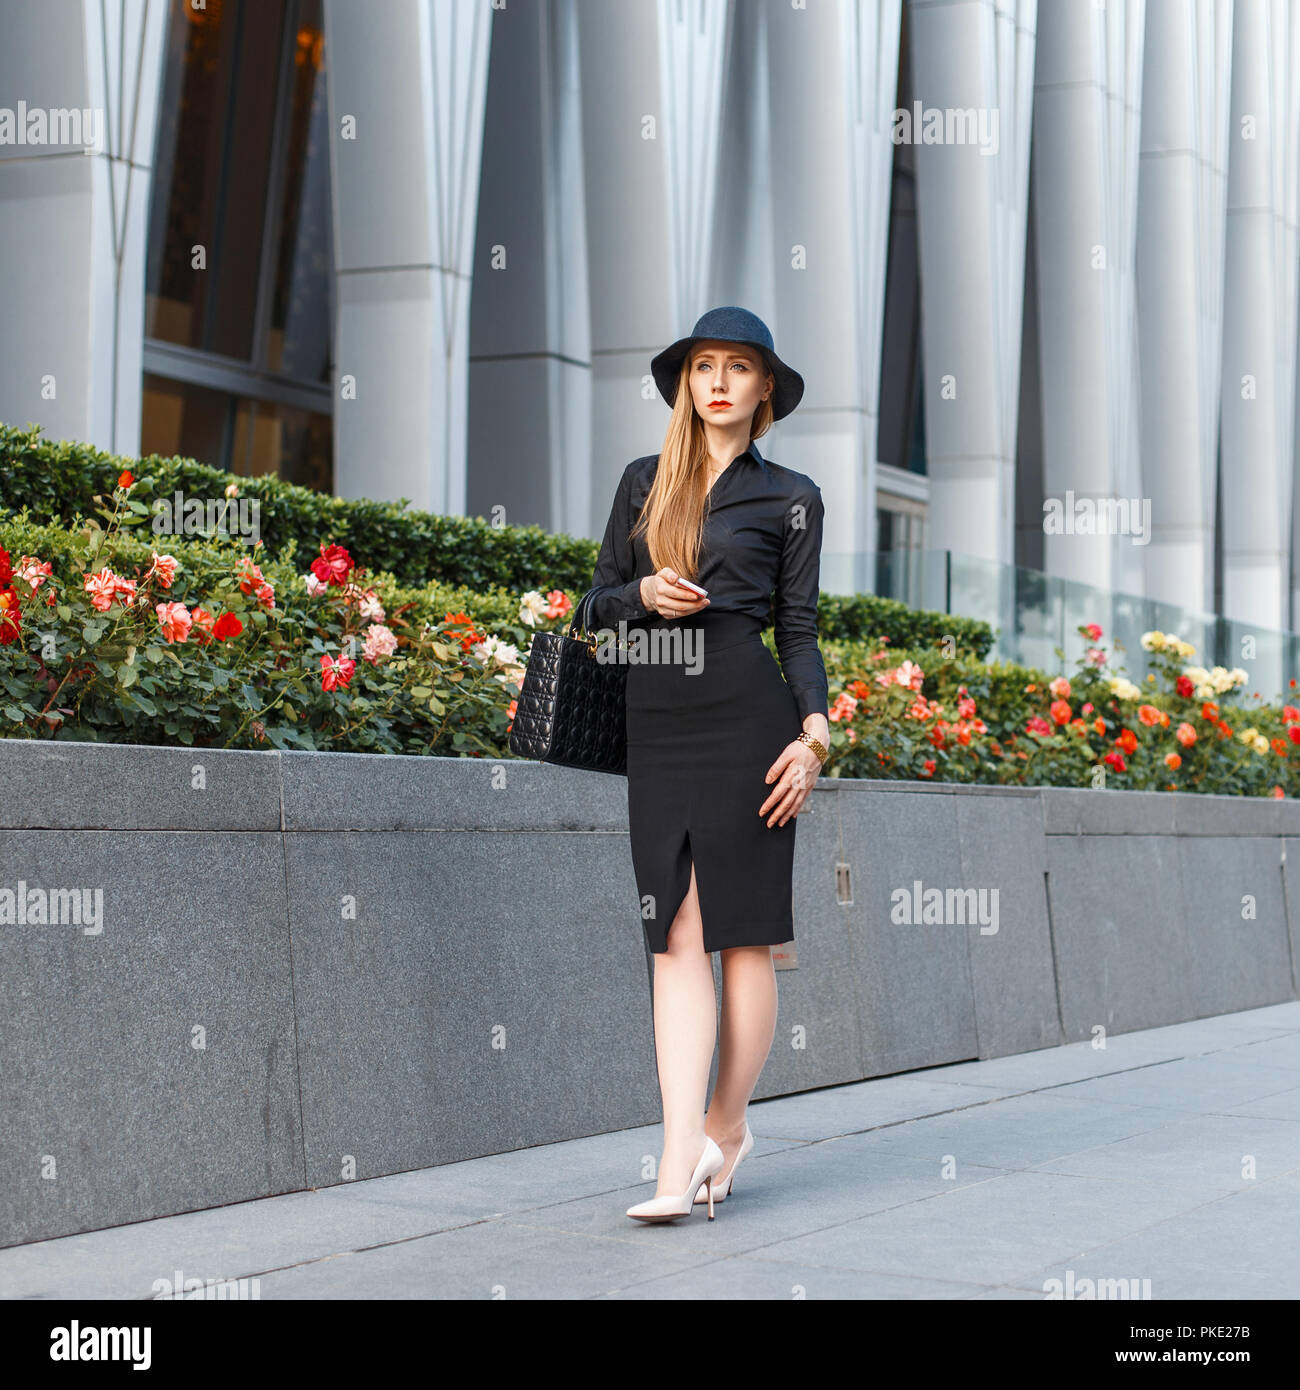 https://c8.alamy.com/compes/pke27b/hermosa-mujer-elegante-en-un-elegante-sombrero-en-ropa-de-estilo-de-negocios-sobre-un-fondo-de-un-edificio-moderno-pke27b.jpg